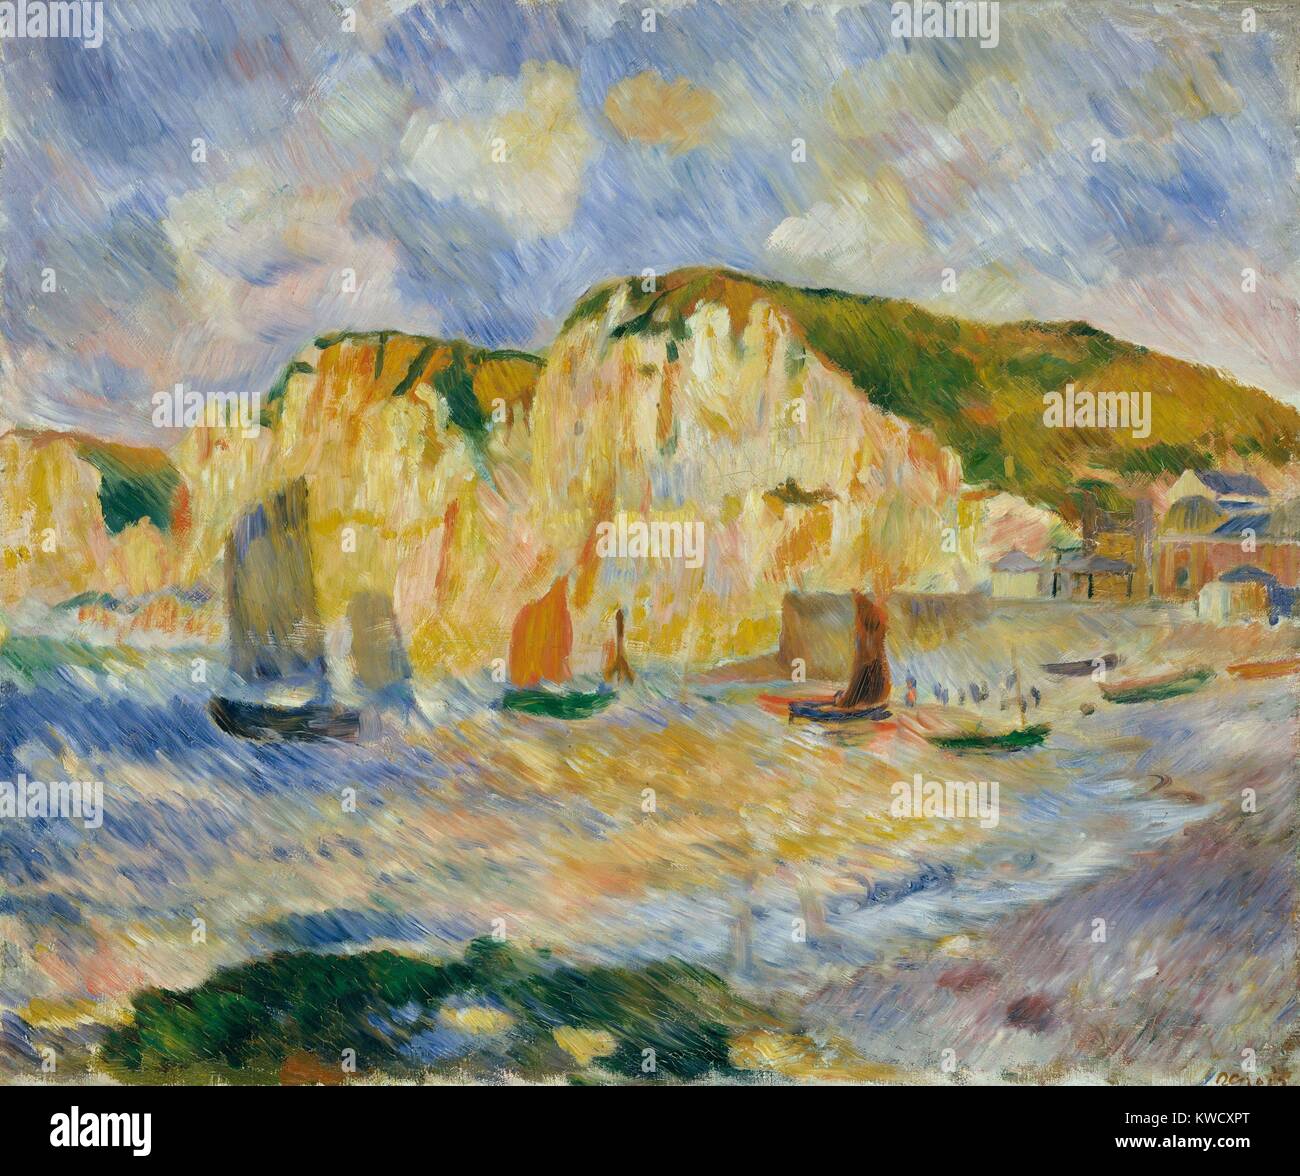 Meer und Klippen, von Auguste Renoir, 1885, französischer impressionistischer Malerei, Öl auf Leinwand. Renoir malte diese Landschaft mit starken geschlüpft gerade Pinselstrichen (BSLOC 2017 3 90) Stockfoto